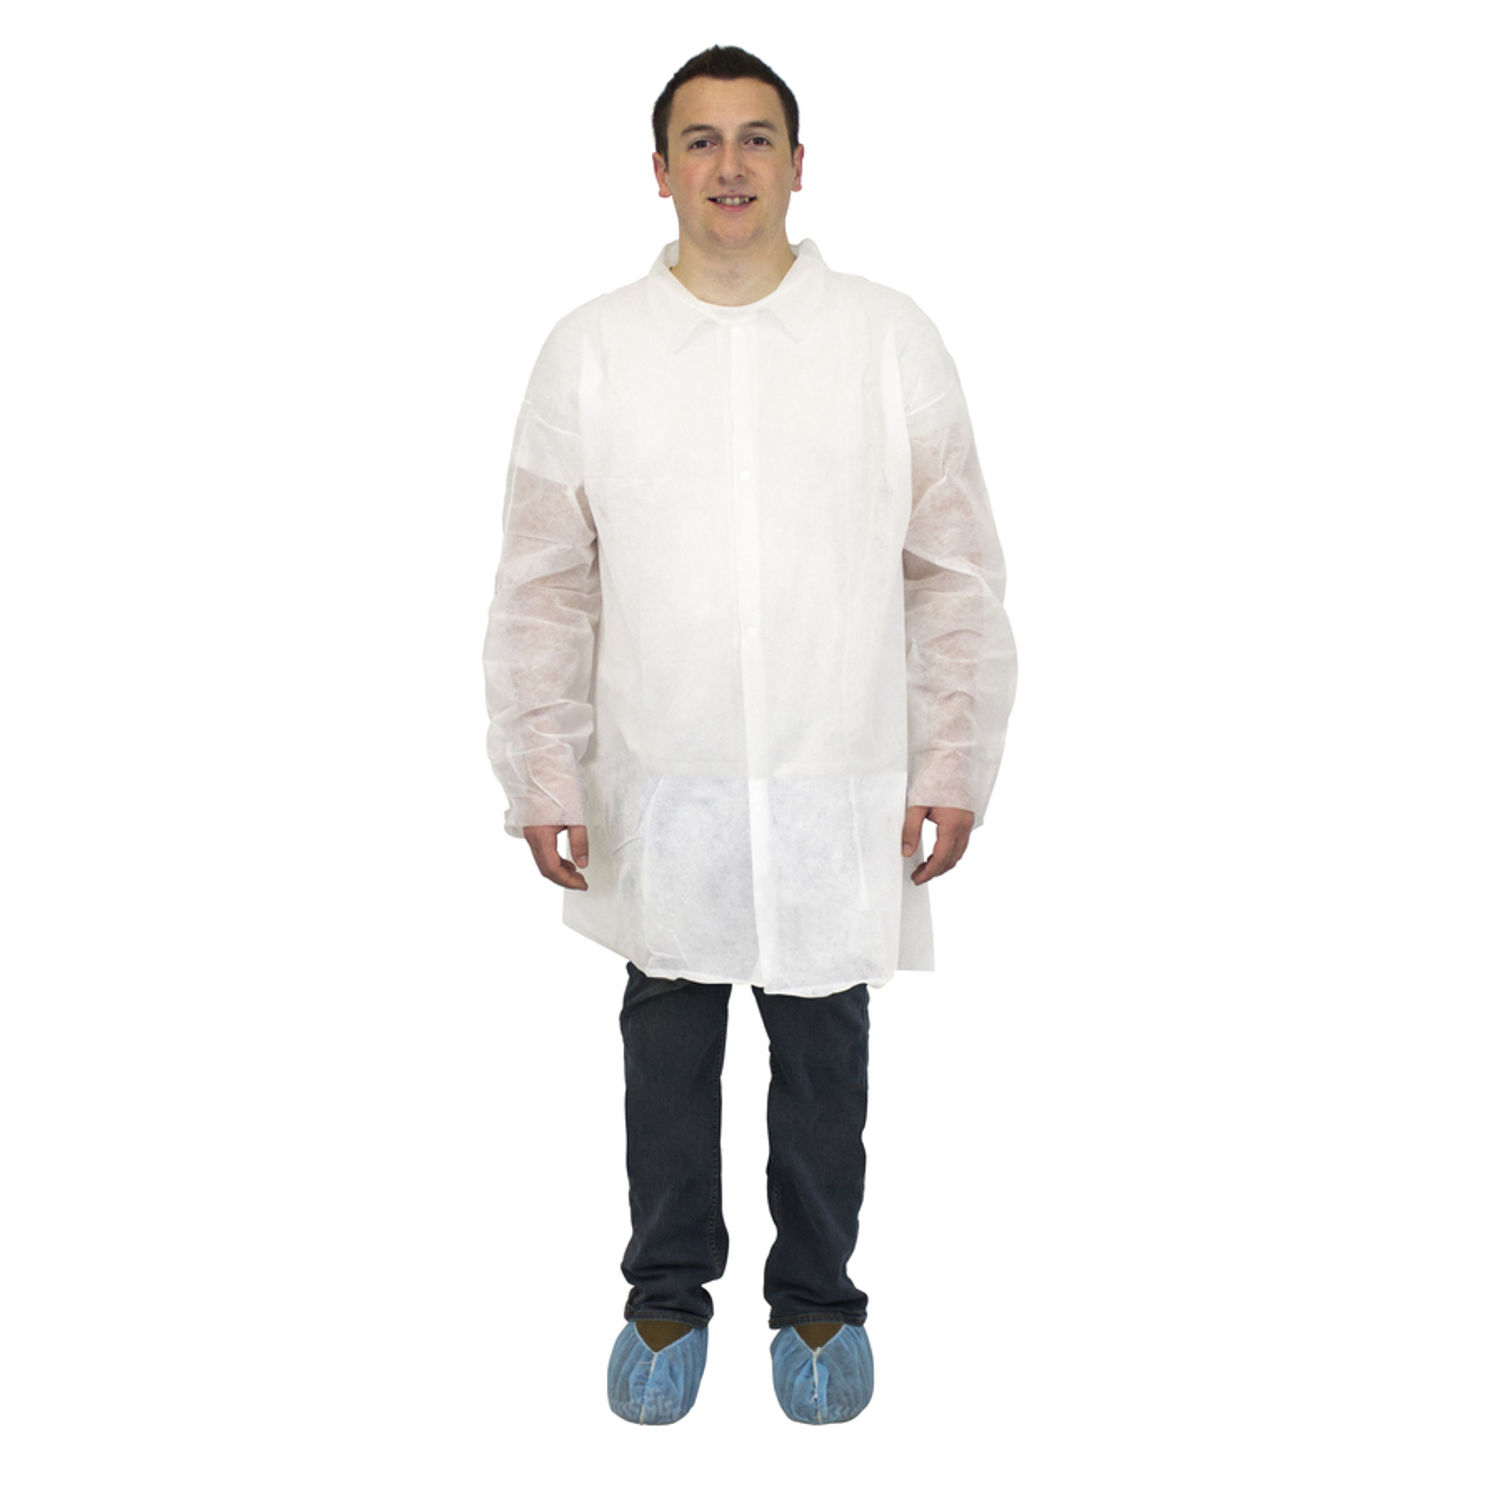 White Lab Coats 5-Xtra Large Size, Polypropylene, 28 g/m2